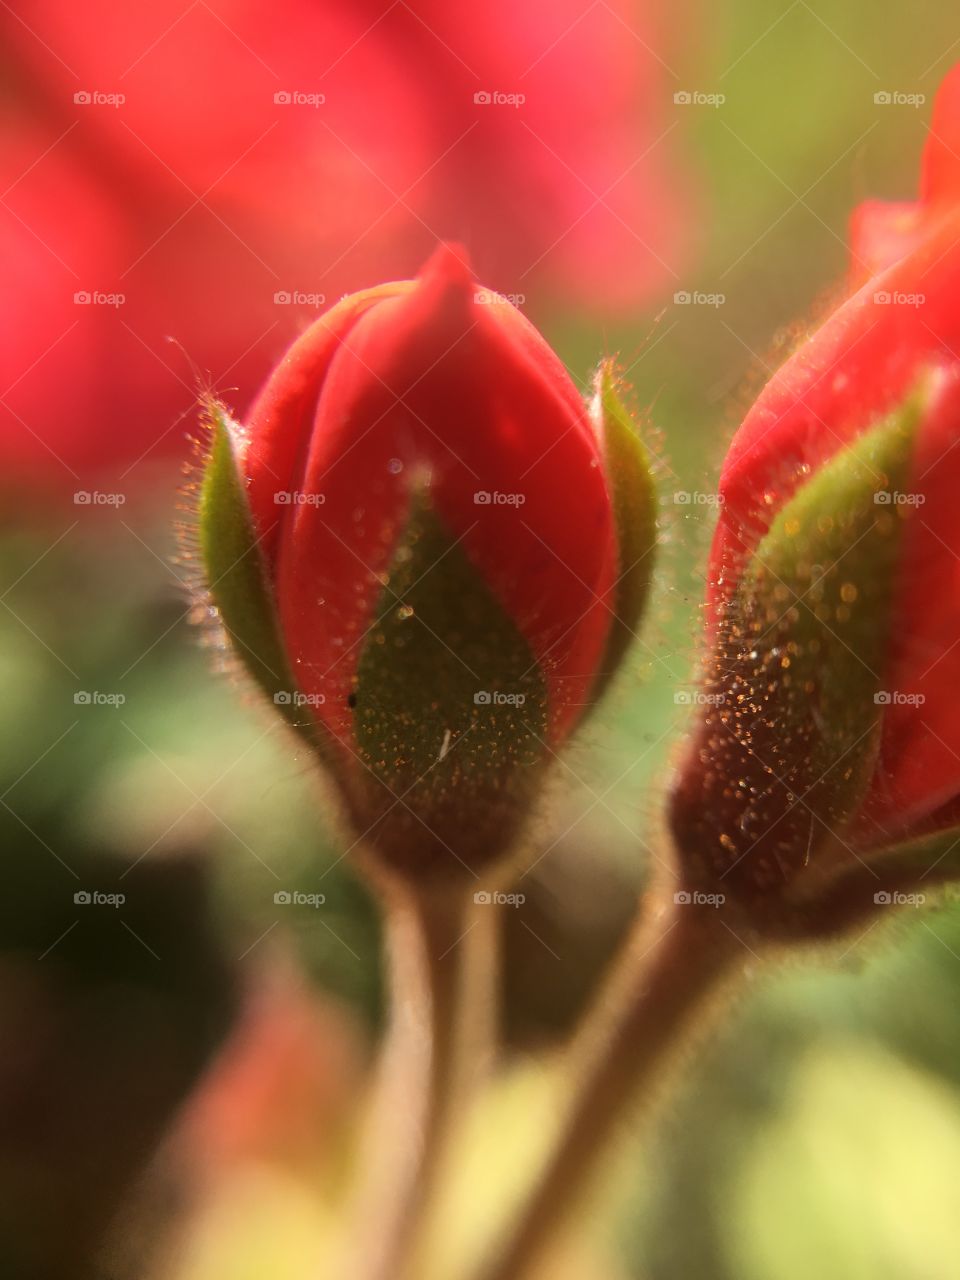 Red geranium bud